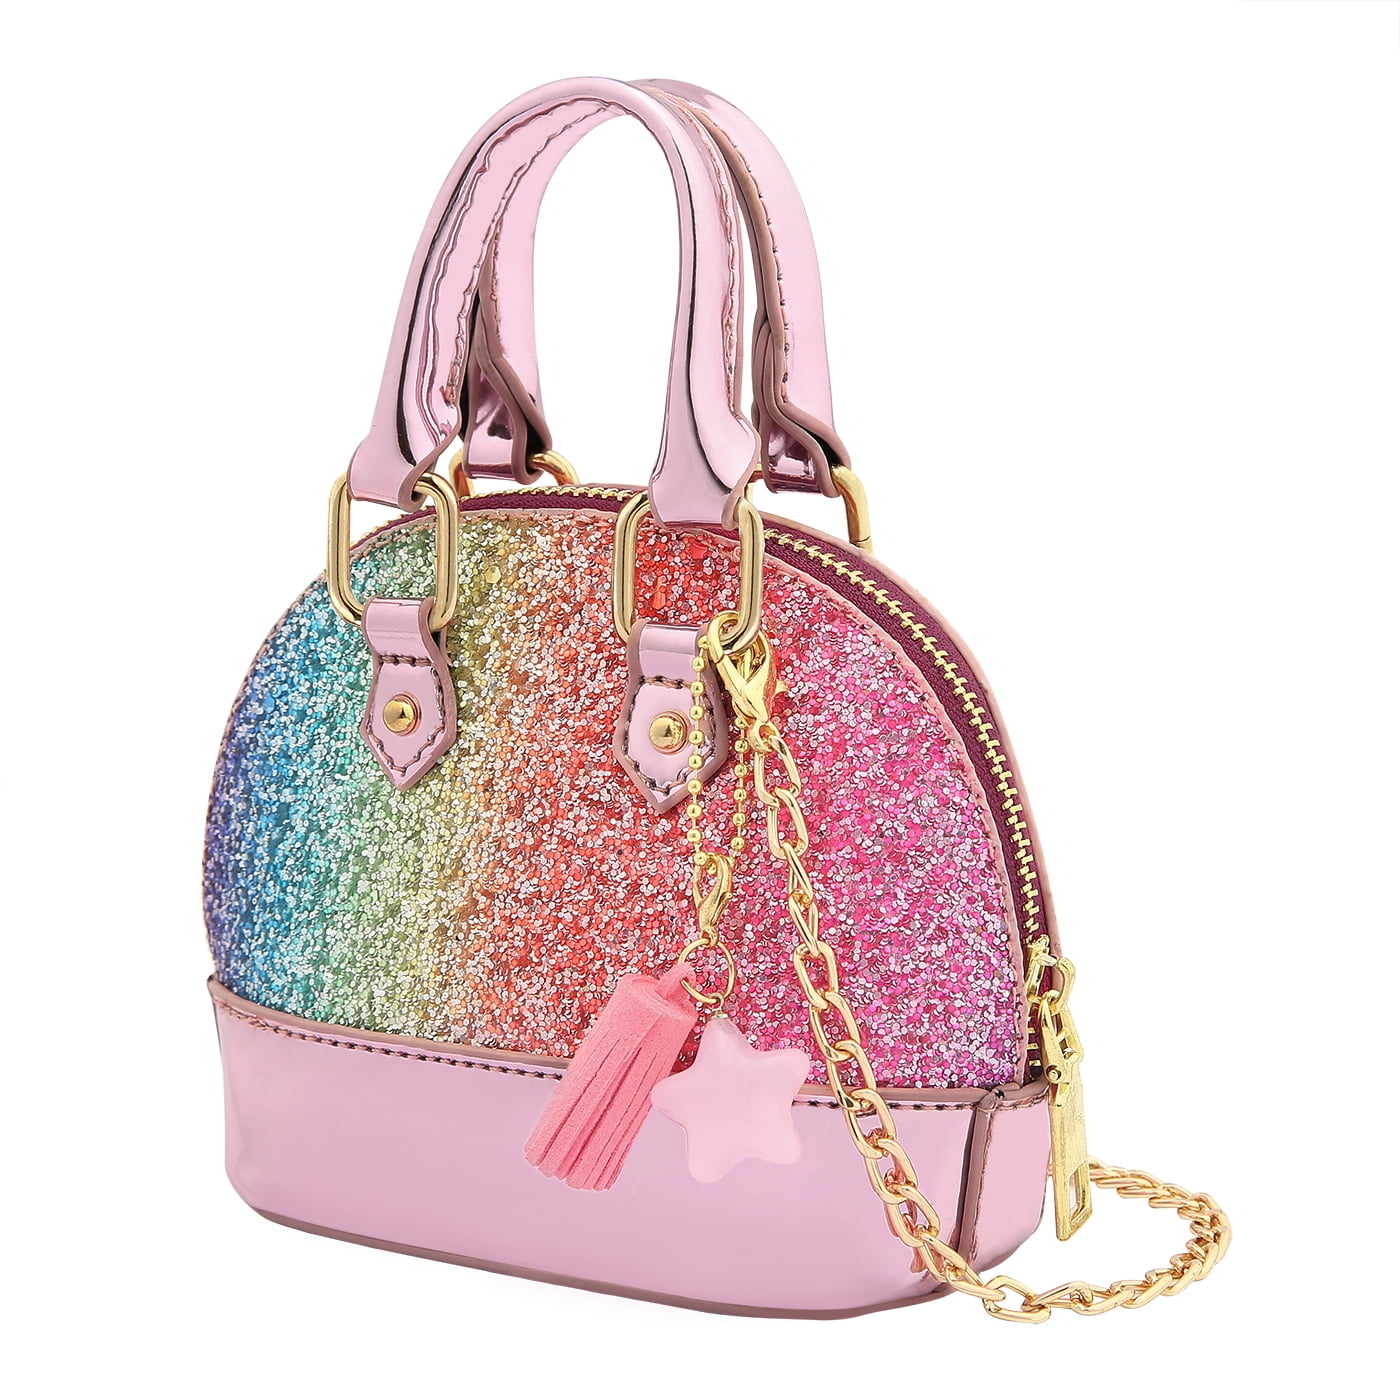 Disney Princess Satchel Handbag Shoulder Bag Shiny Silver Accents Pink Purse New 